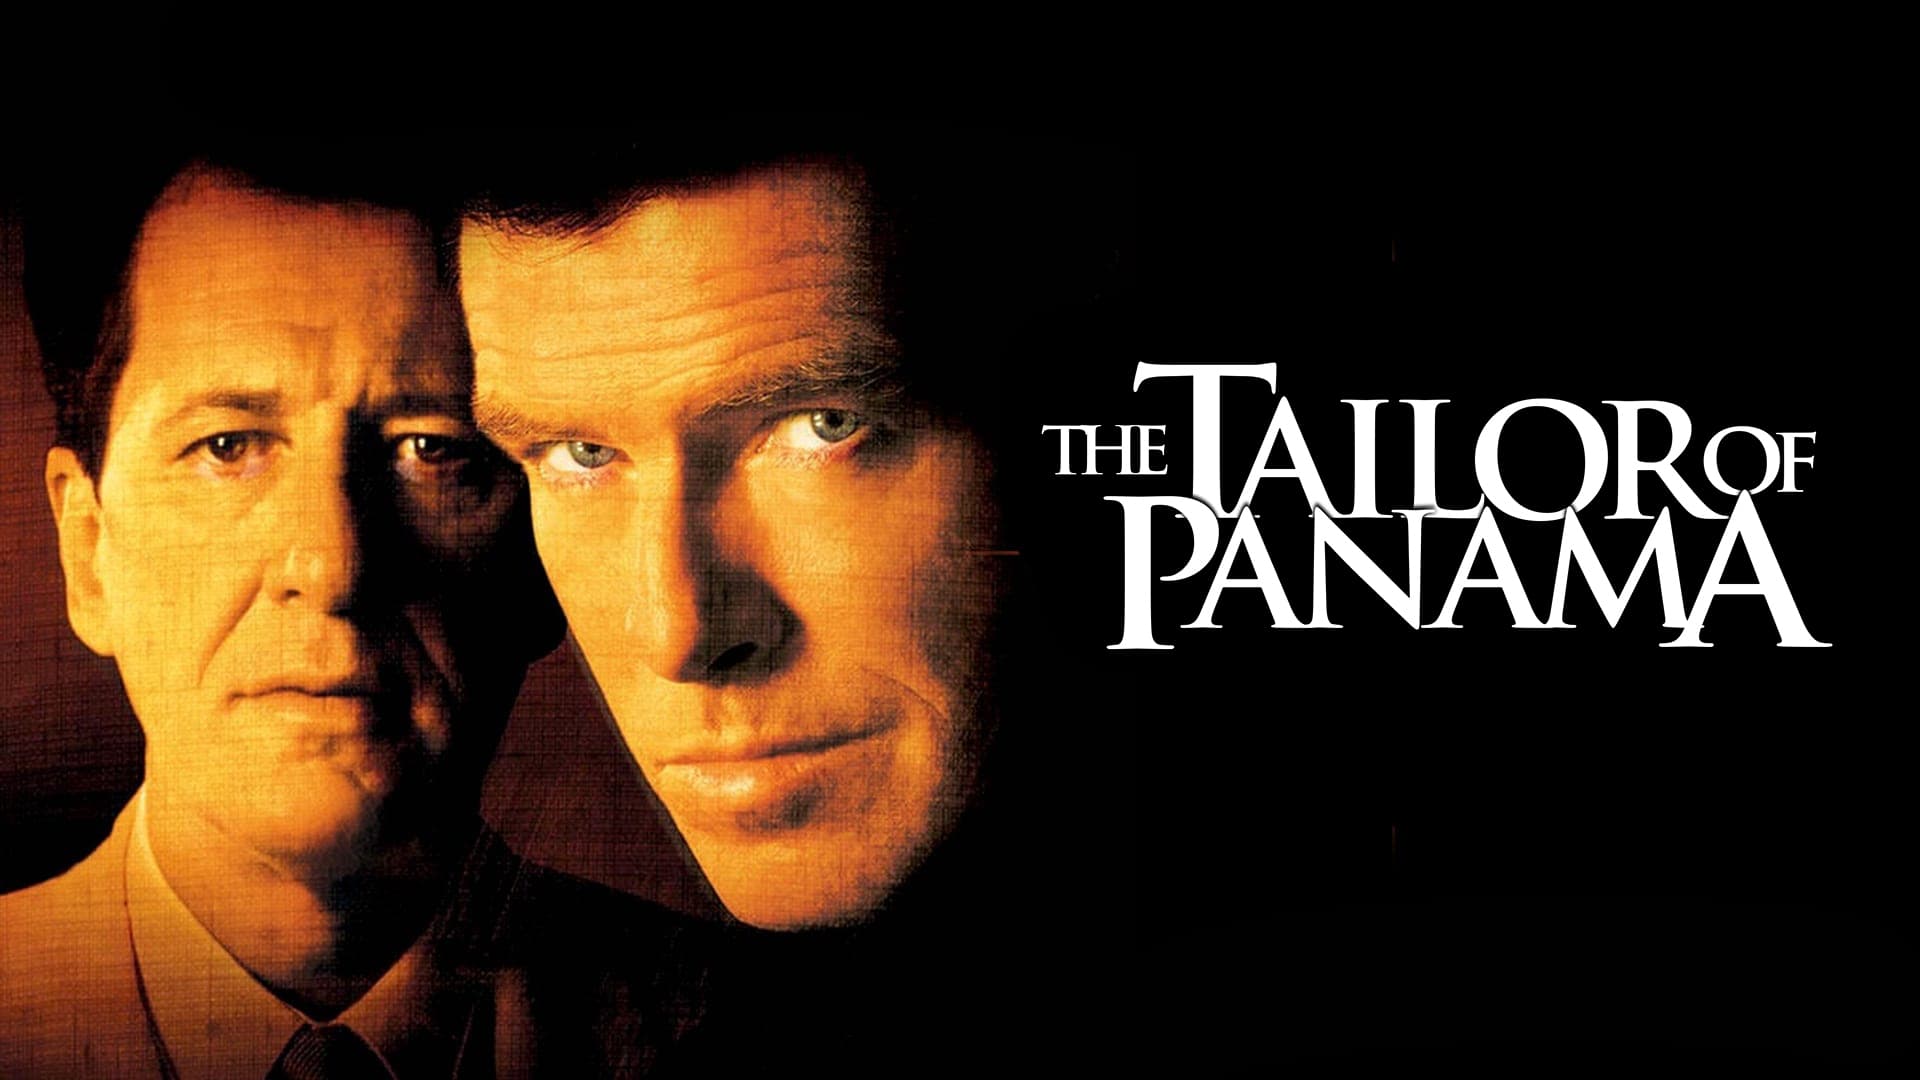 El sastre de Panamá (2001)